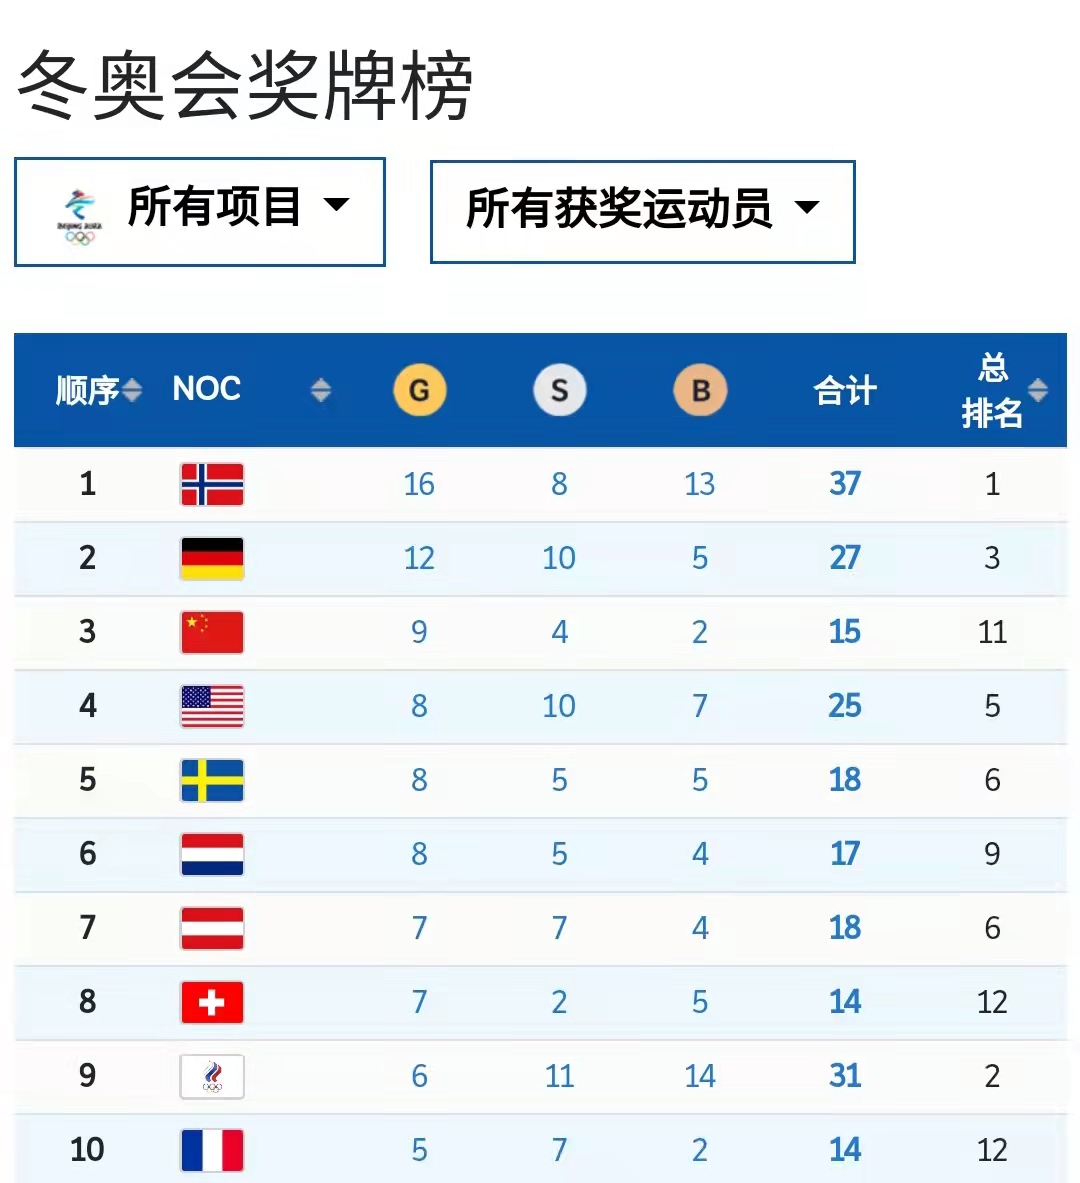 中国代表团金牌数和奖牌数均创历史新高--2022年北京冬季奥运会-热点专题-杭州网